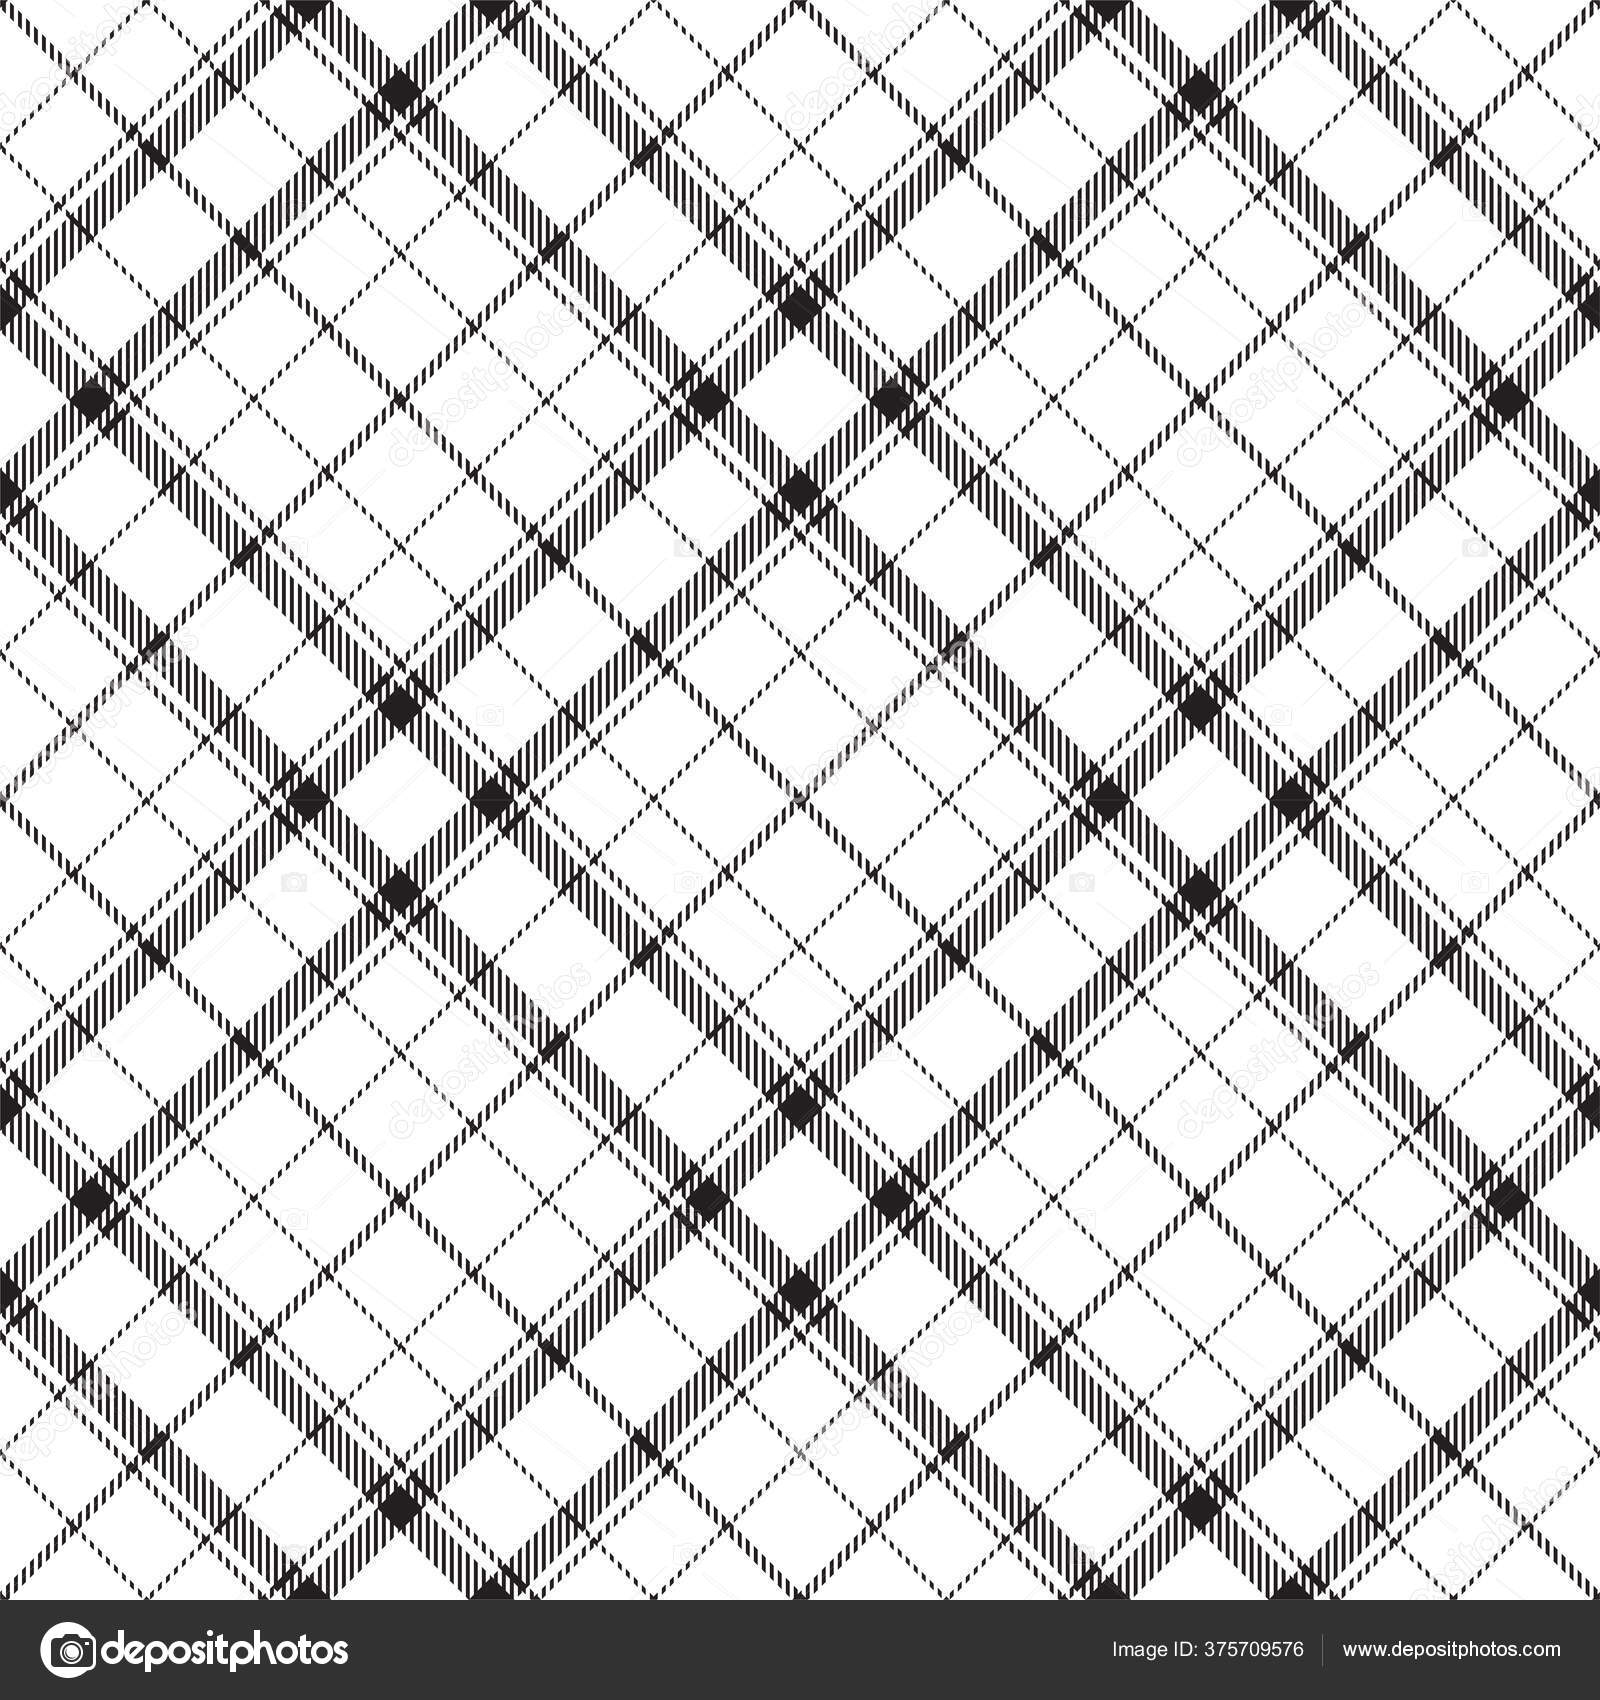 Padrão de xadrez fundo de textura quadrada preto e branco em vetor plano